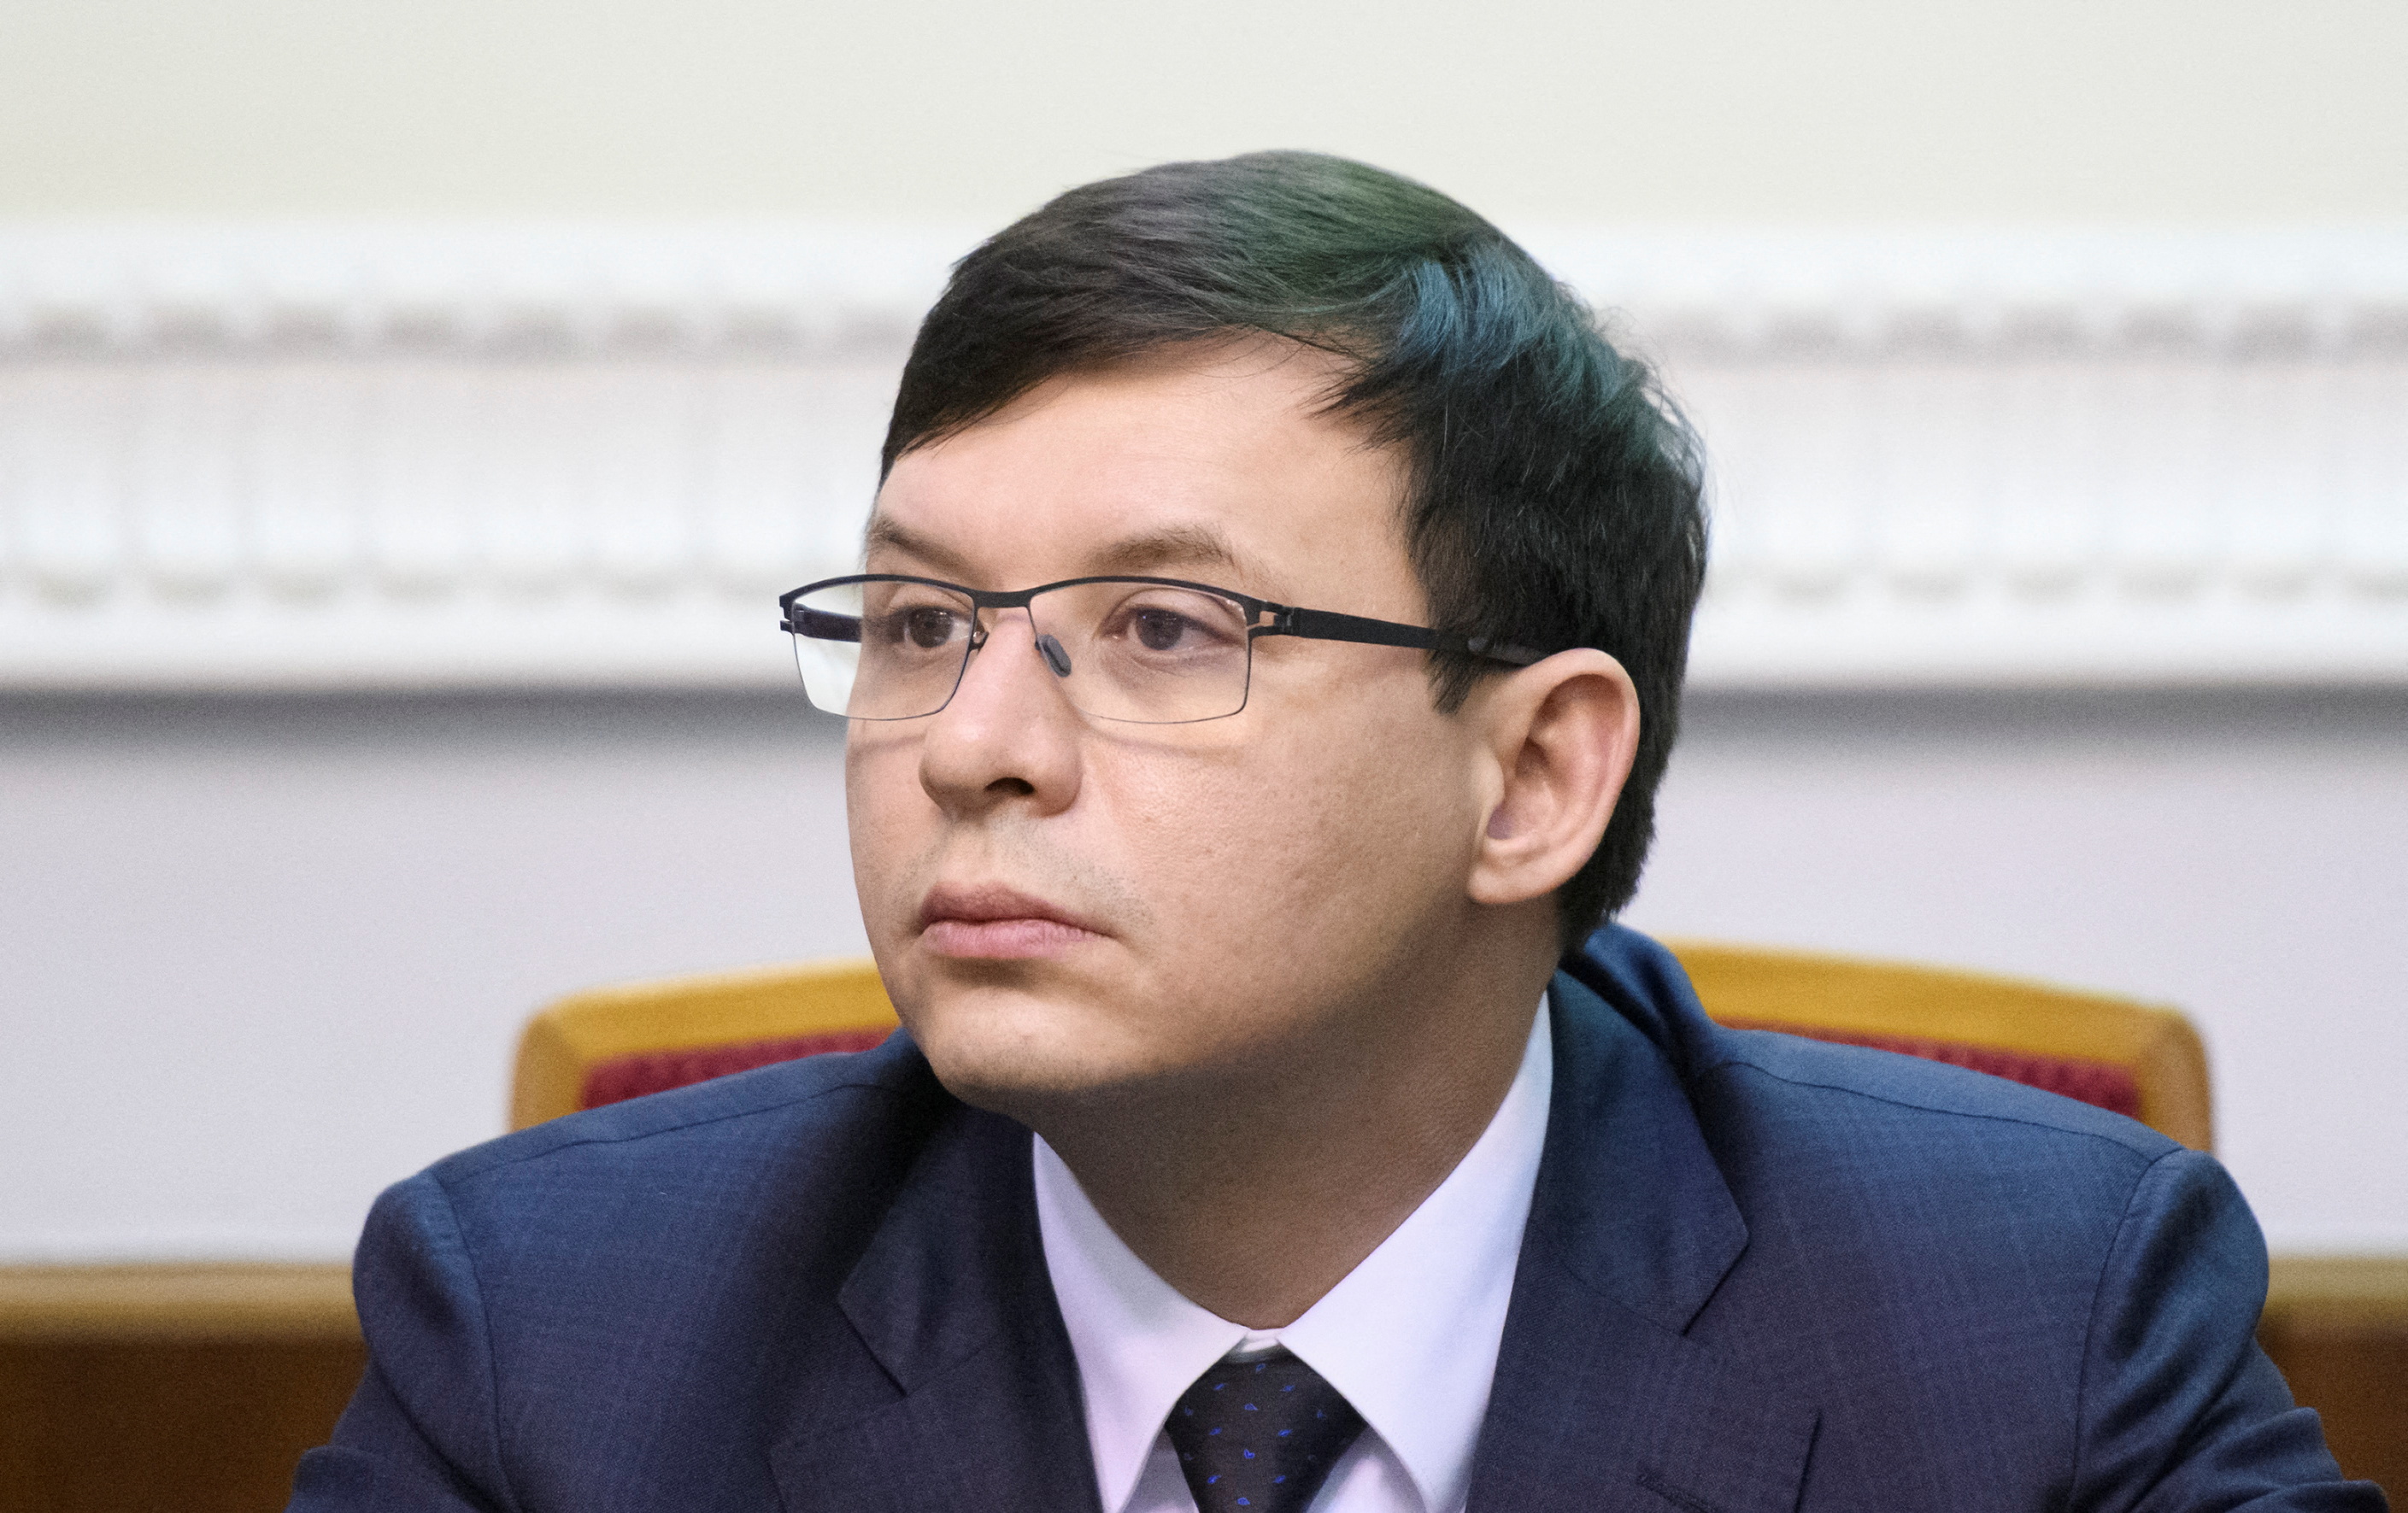 Ukraynalı milletvekili Yevhen Murayev, Ukrayna parlamentosu Verkhovna Rada'nın 26 Kasım 2018'de Kiev, Ukrayna'daki bir oturumuna katıldı. Fotoğraf 26 Kasım 2018'de çekildi. REUTERS/Vladislav Musienko